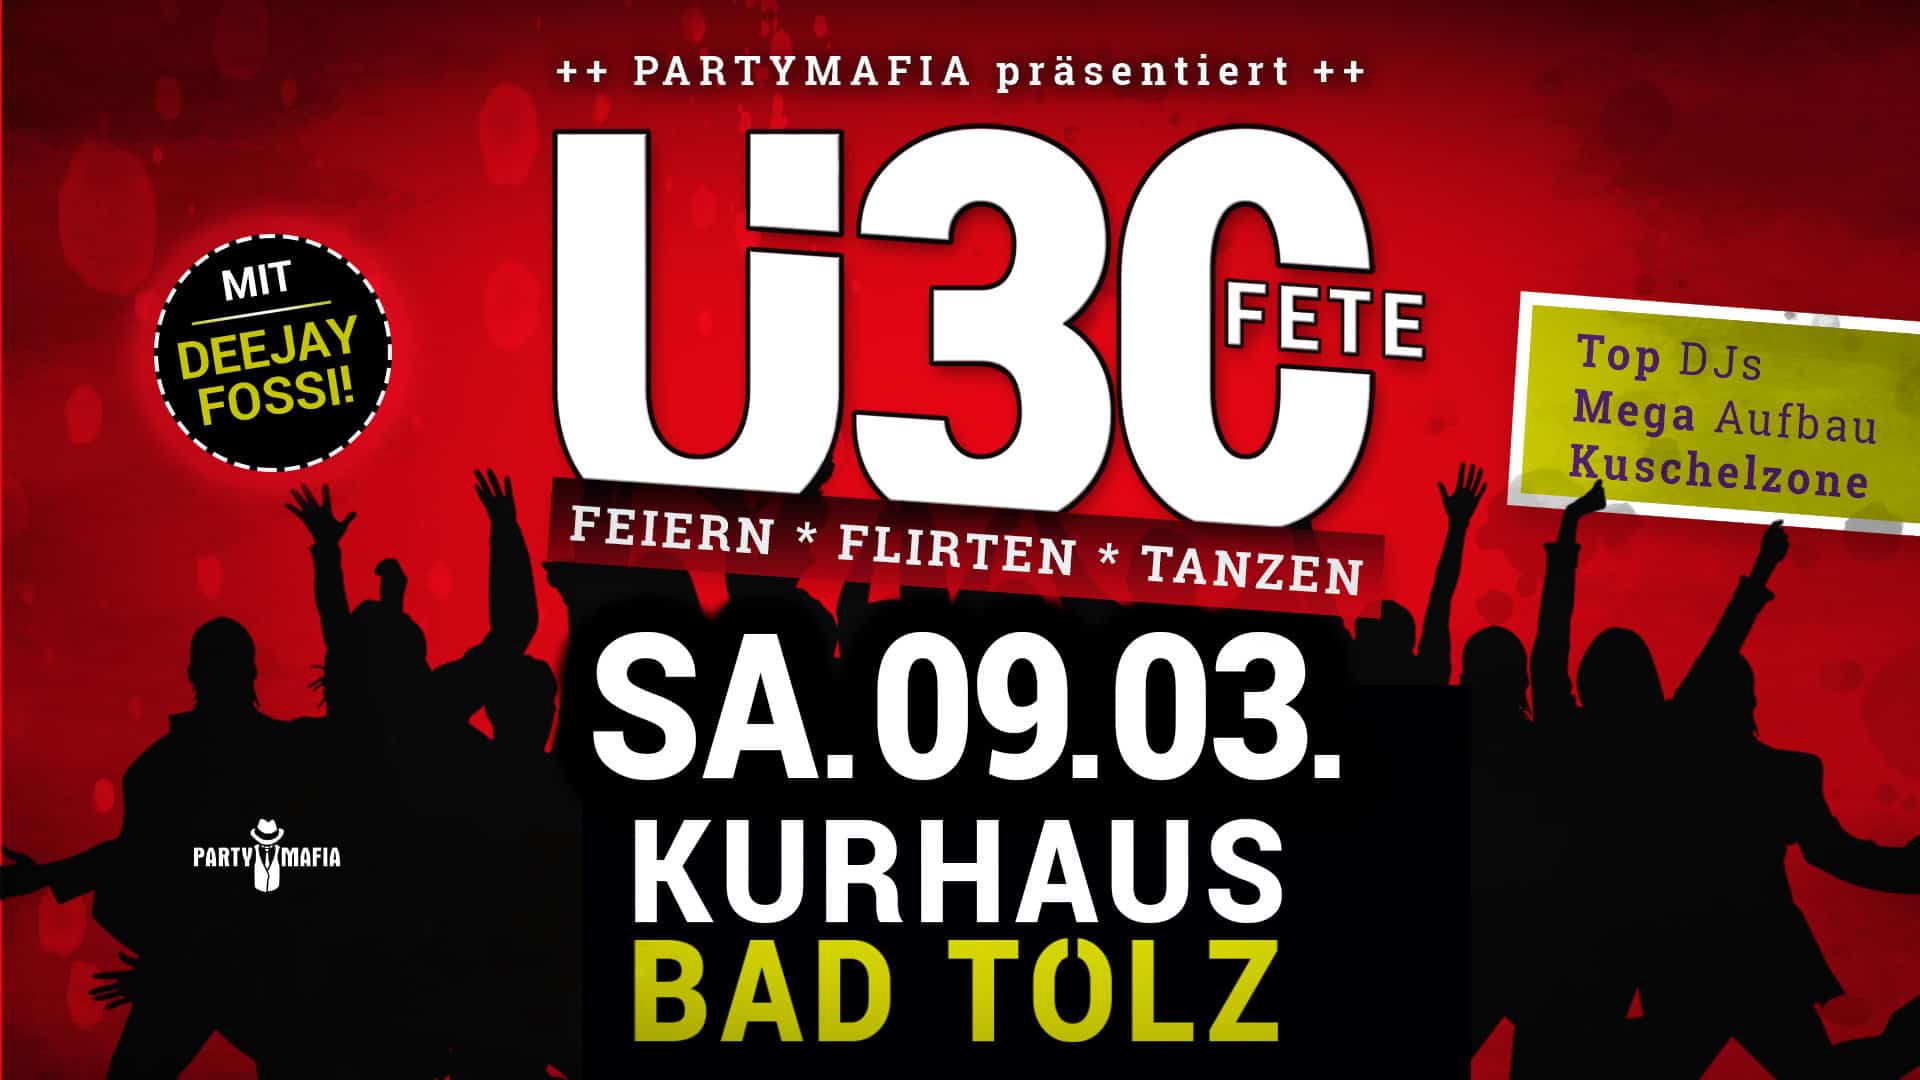 Ü30 Party Highlight, Kultparty in Bad Tölz: Die Ü30 FETE - Treffen, feiern, flirten